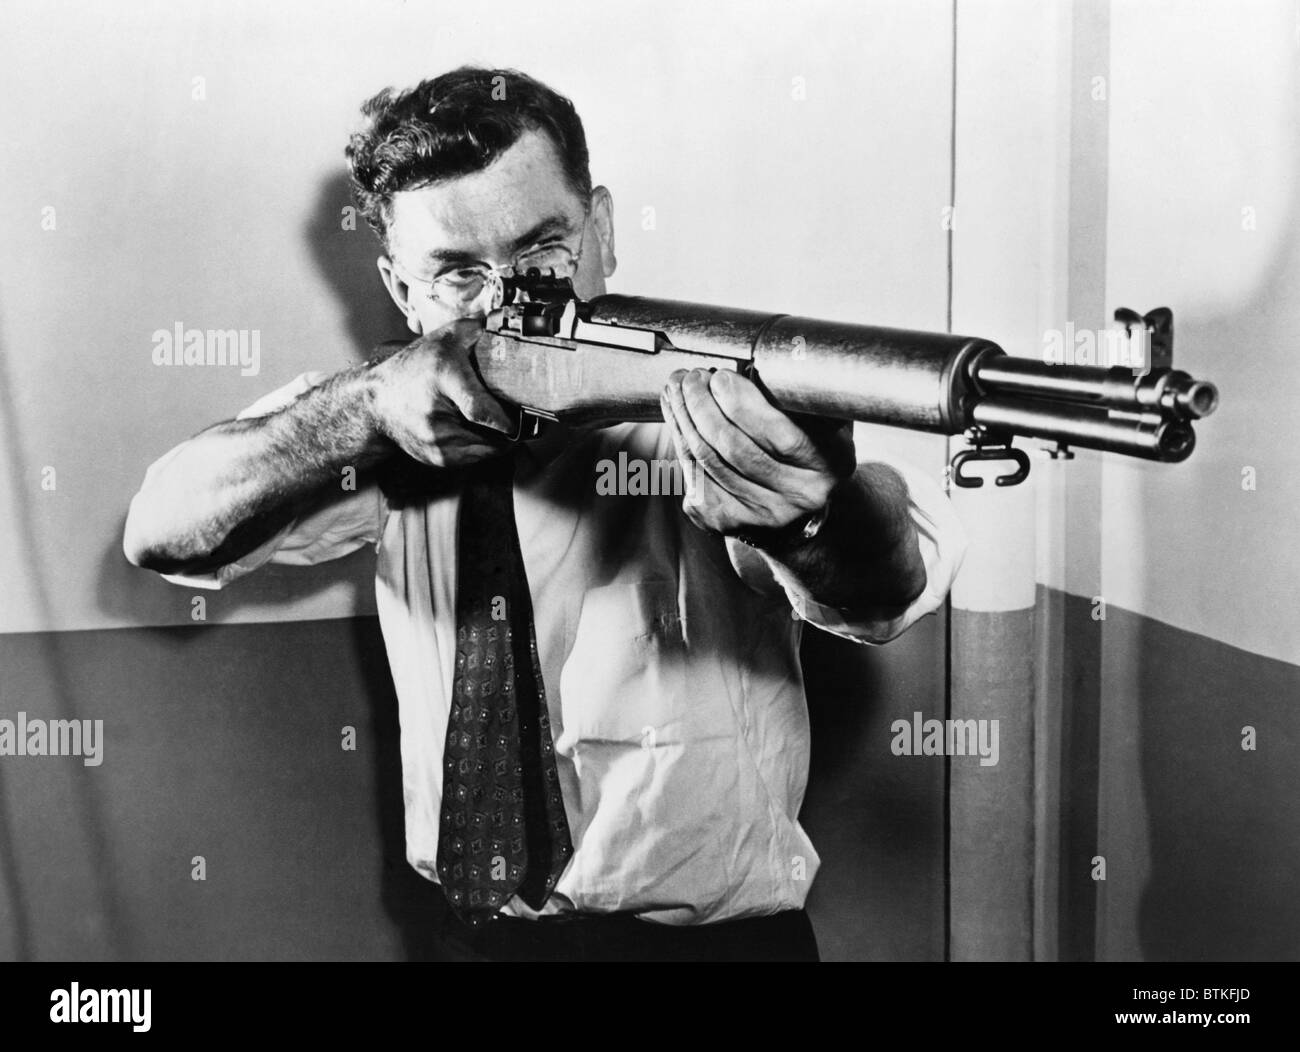 John C. Garand (1888-1974), visant l'un des fusils américains semi-automatique, le calibre .30 M 1, qu'il a inventé. La M1 carabine semi-automatique, a été utilisé par les fantassins américains pendant la Seconde Guerre mondiale et la guerre de Corée. Ca. 1943. Banque D'Images